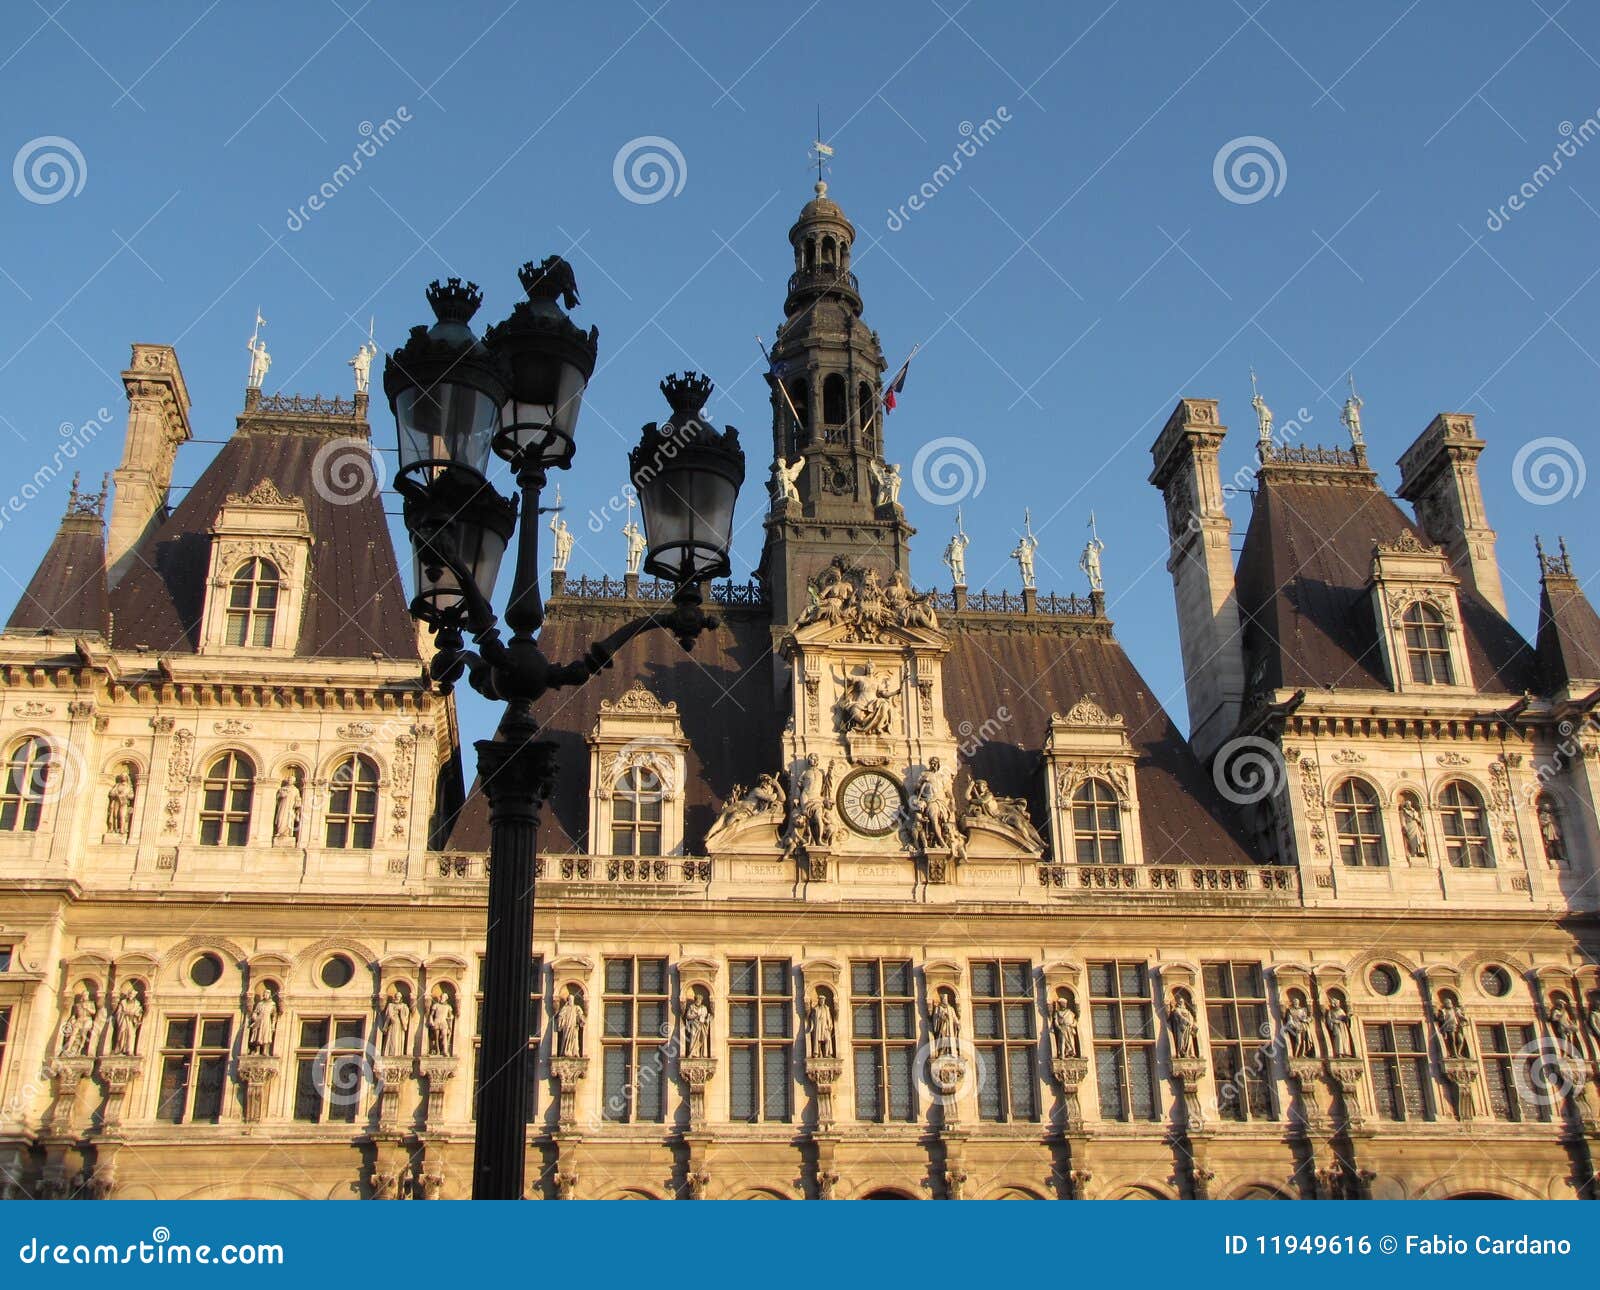 Paris city hall stock photo. Image of europe, urban, hall - 11949616